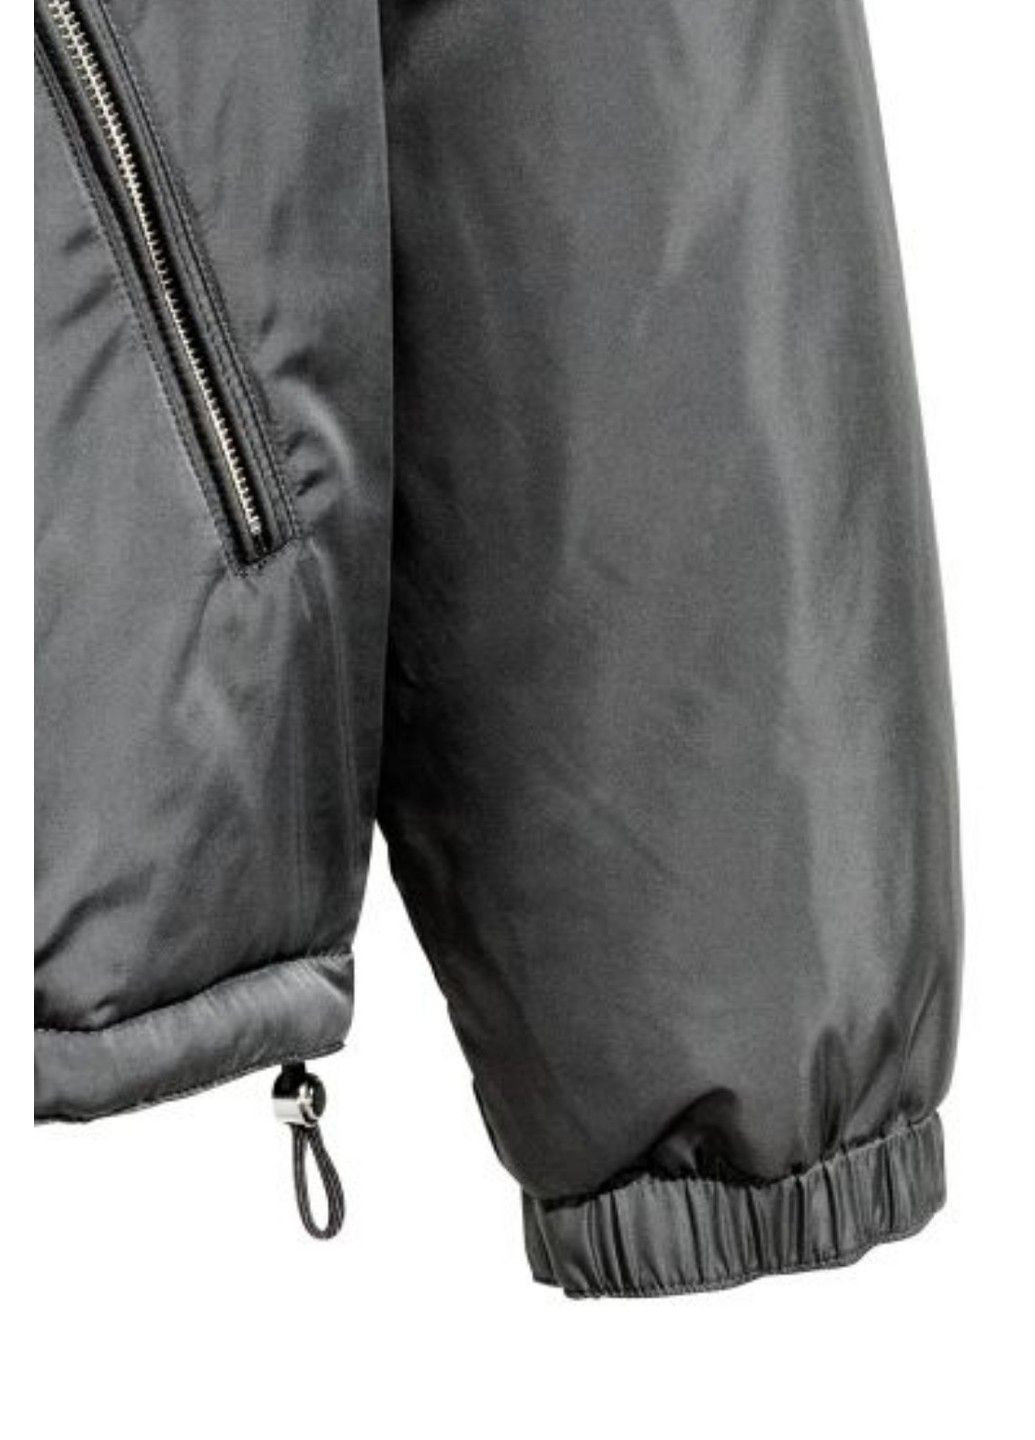 Темно-серая демисезонная мужская куртка бомбер н&м (56654) xl темно-серая H&M